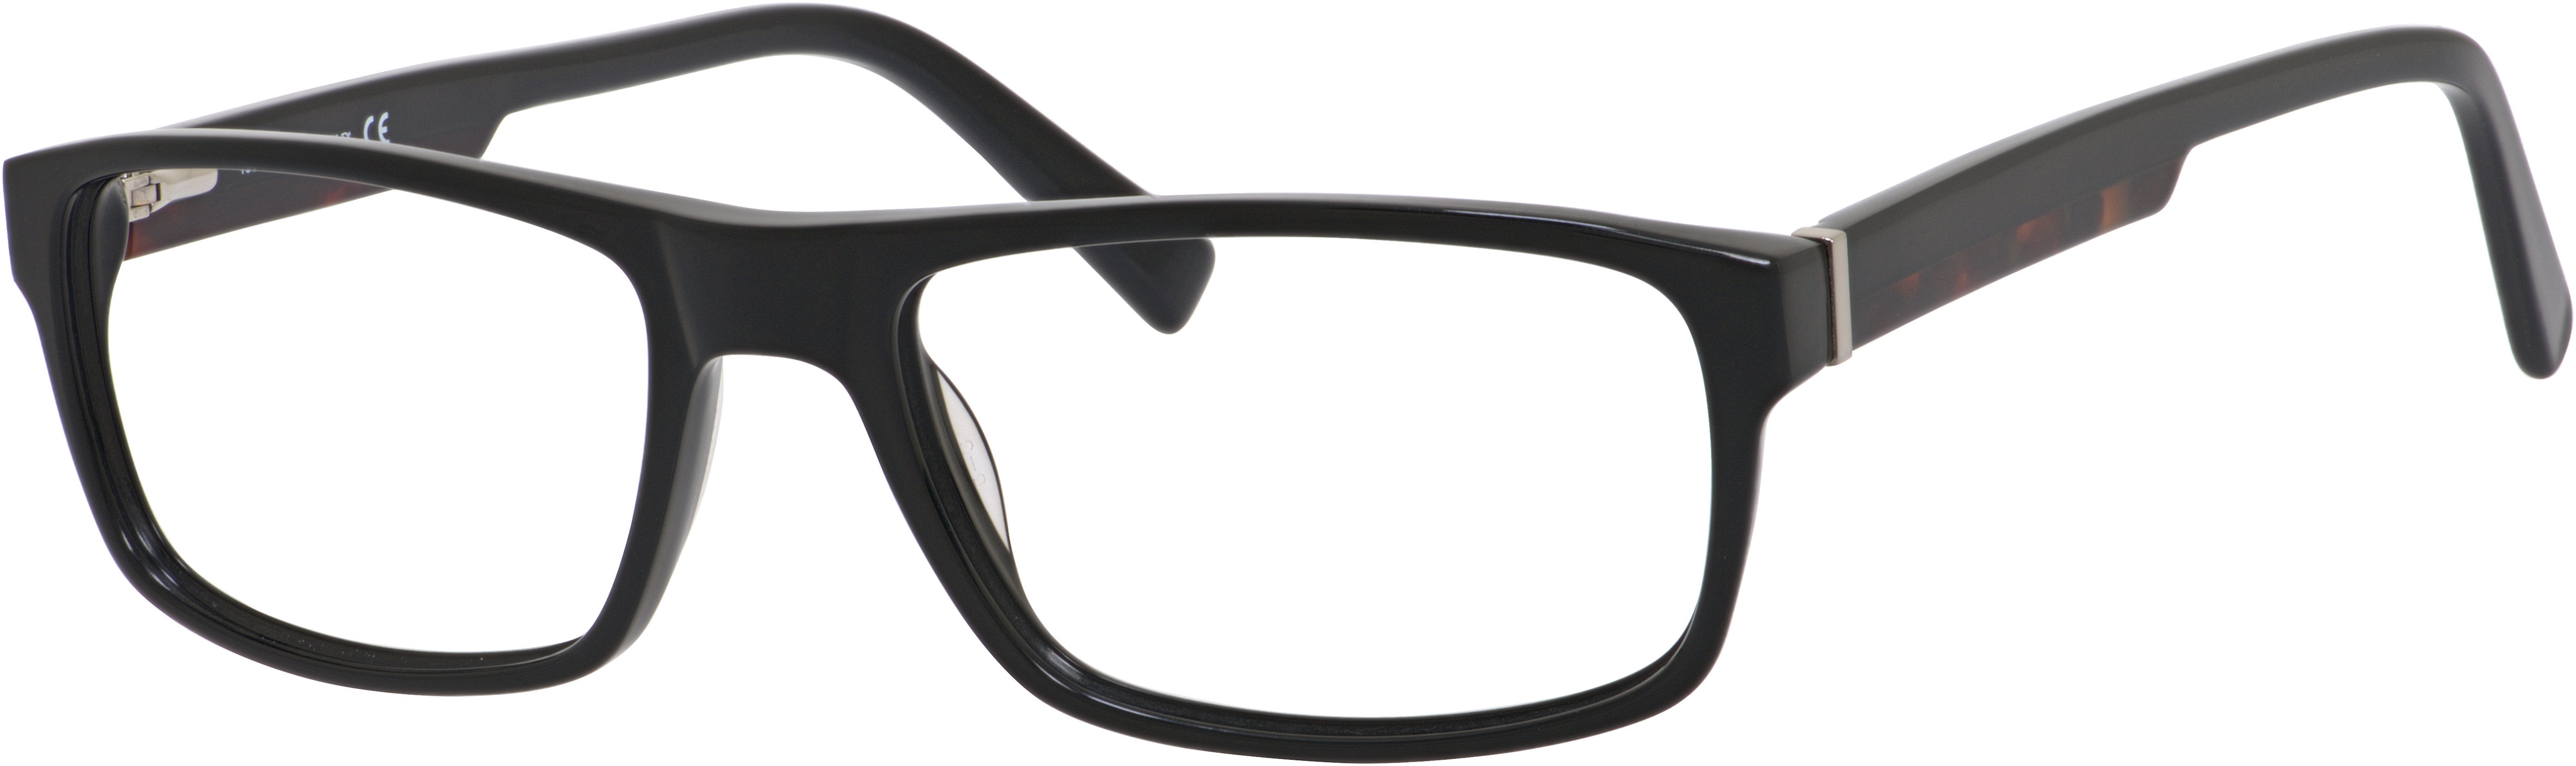  Chesterfield 35 XL Rectangular Eyeglasses 0807-0807  Black (00 Demo Lens)